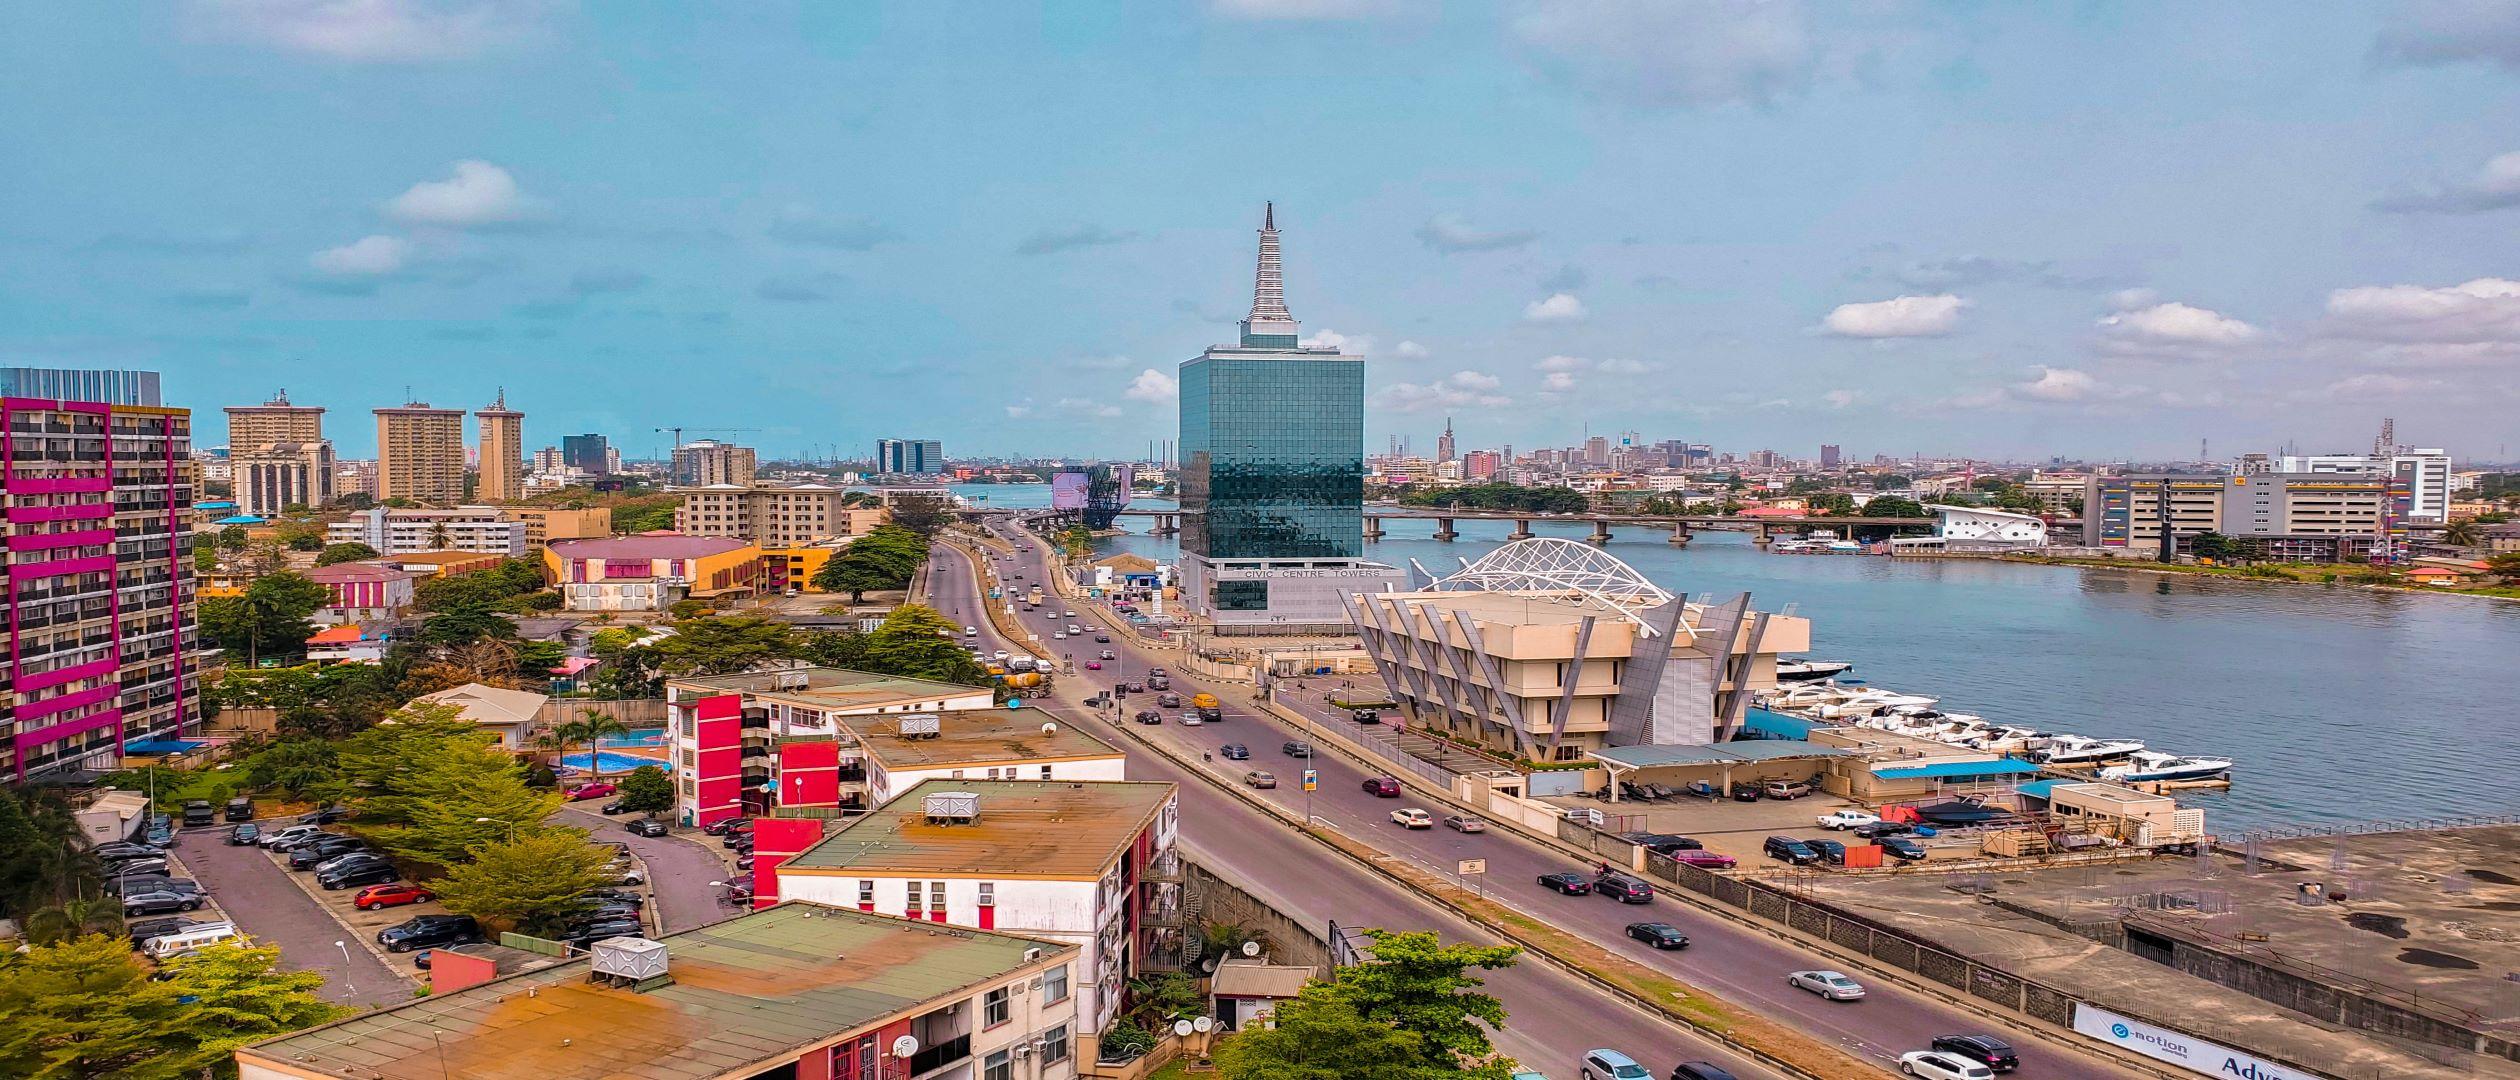 home civic towers nigeria